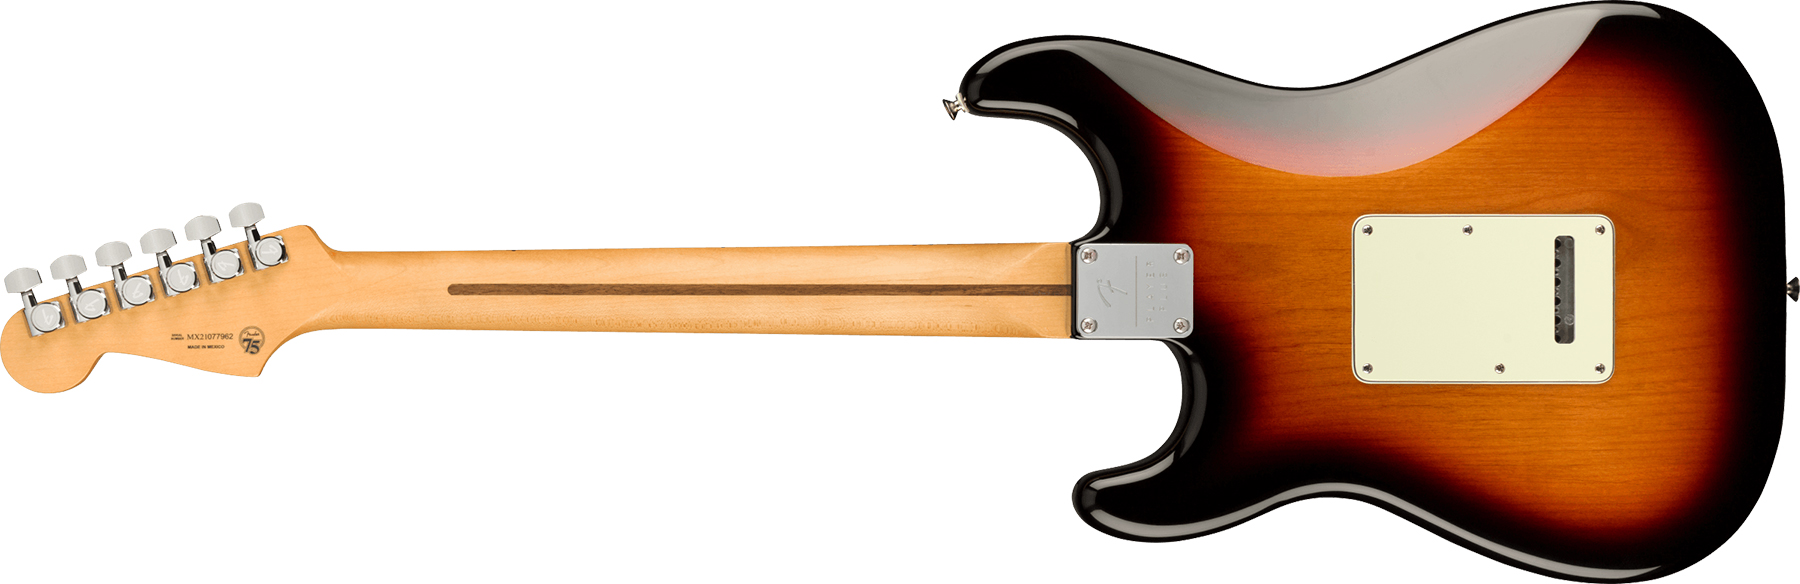 Fender Strat Player Plus Mex Hss Trem Mn - 3-color Sunburst - Guitare Électrique Forme Str - Variation 1